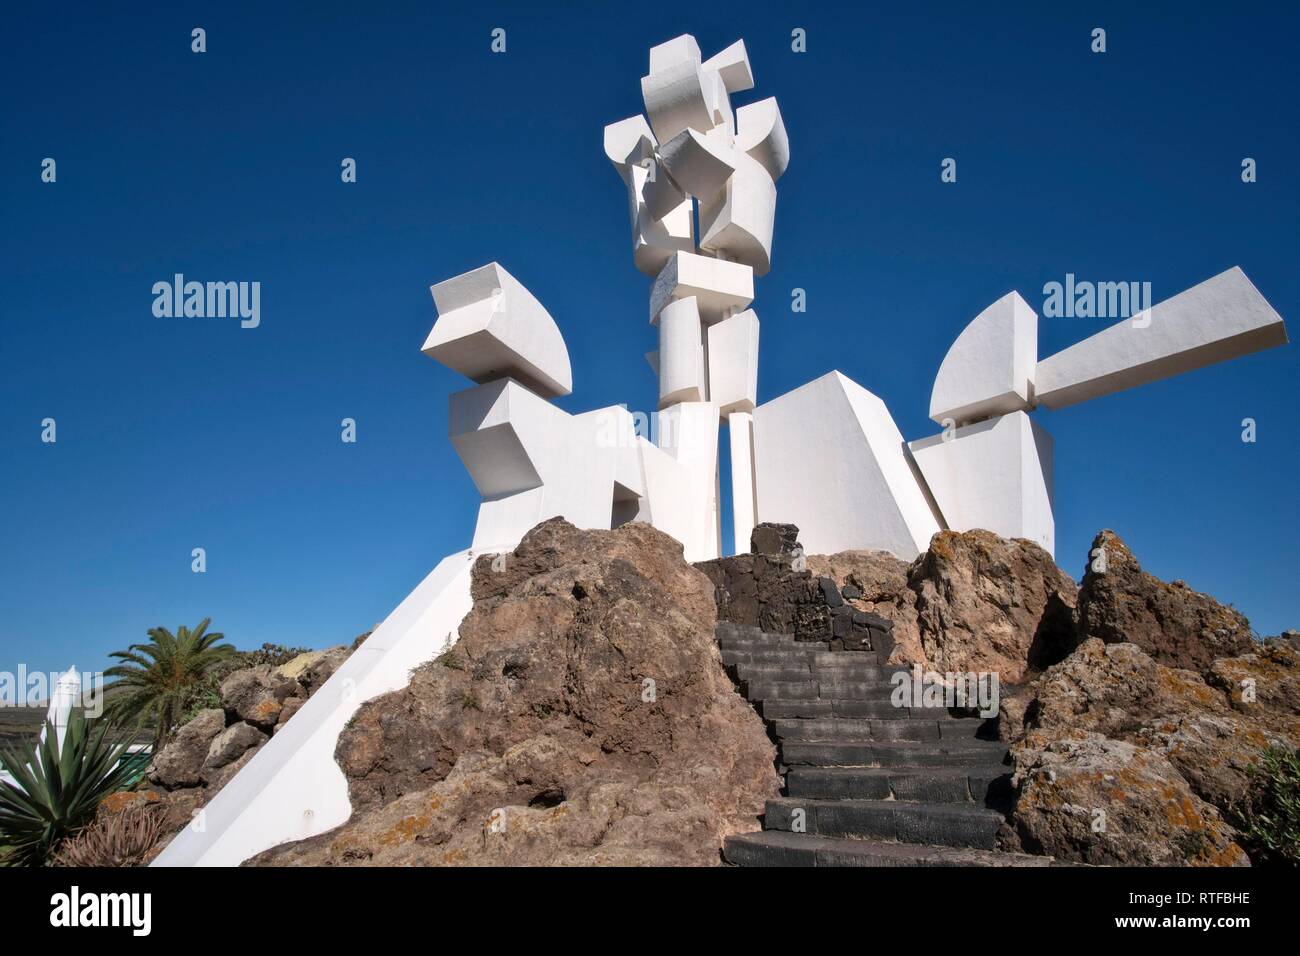 Escultura Monumento al Campesino por el artista César Manrique, Mozaga, Lanzarote, ESPAÑA Foto de stock